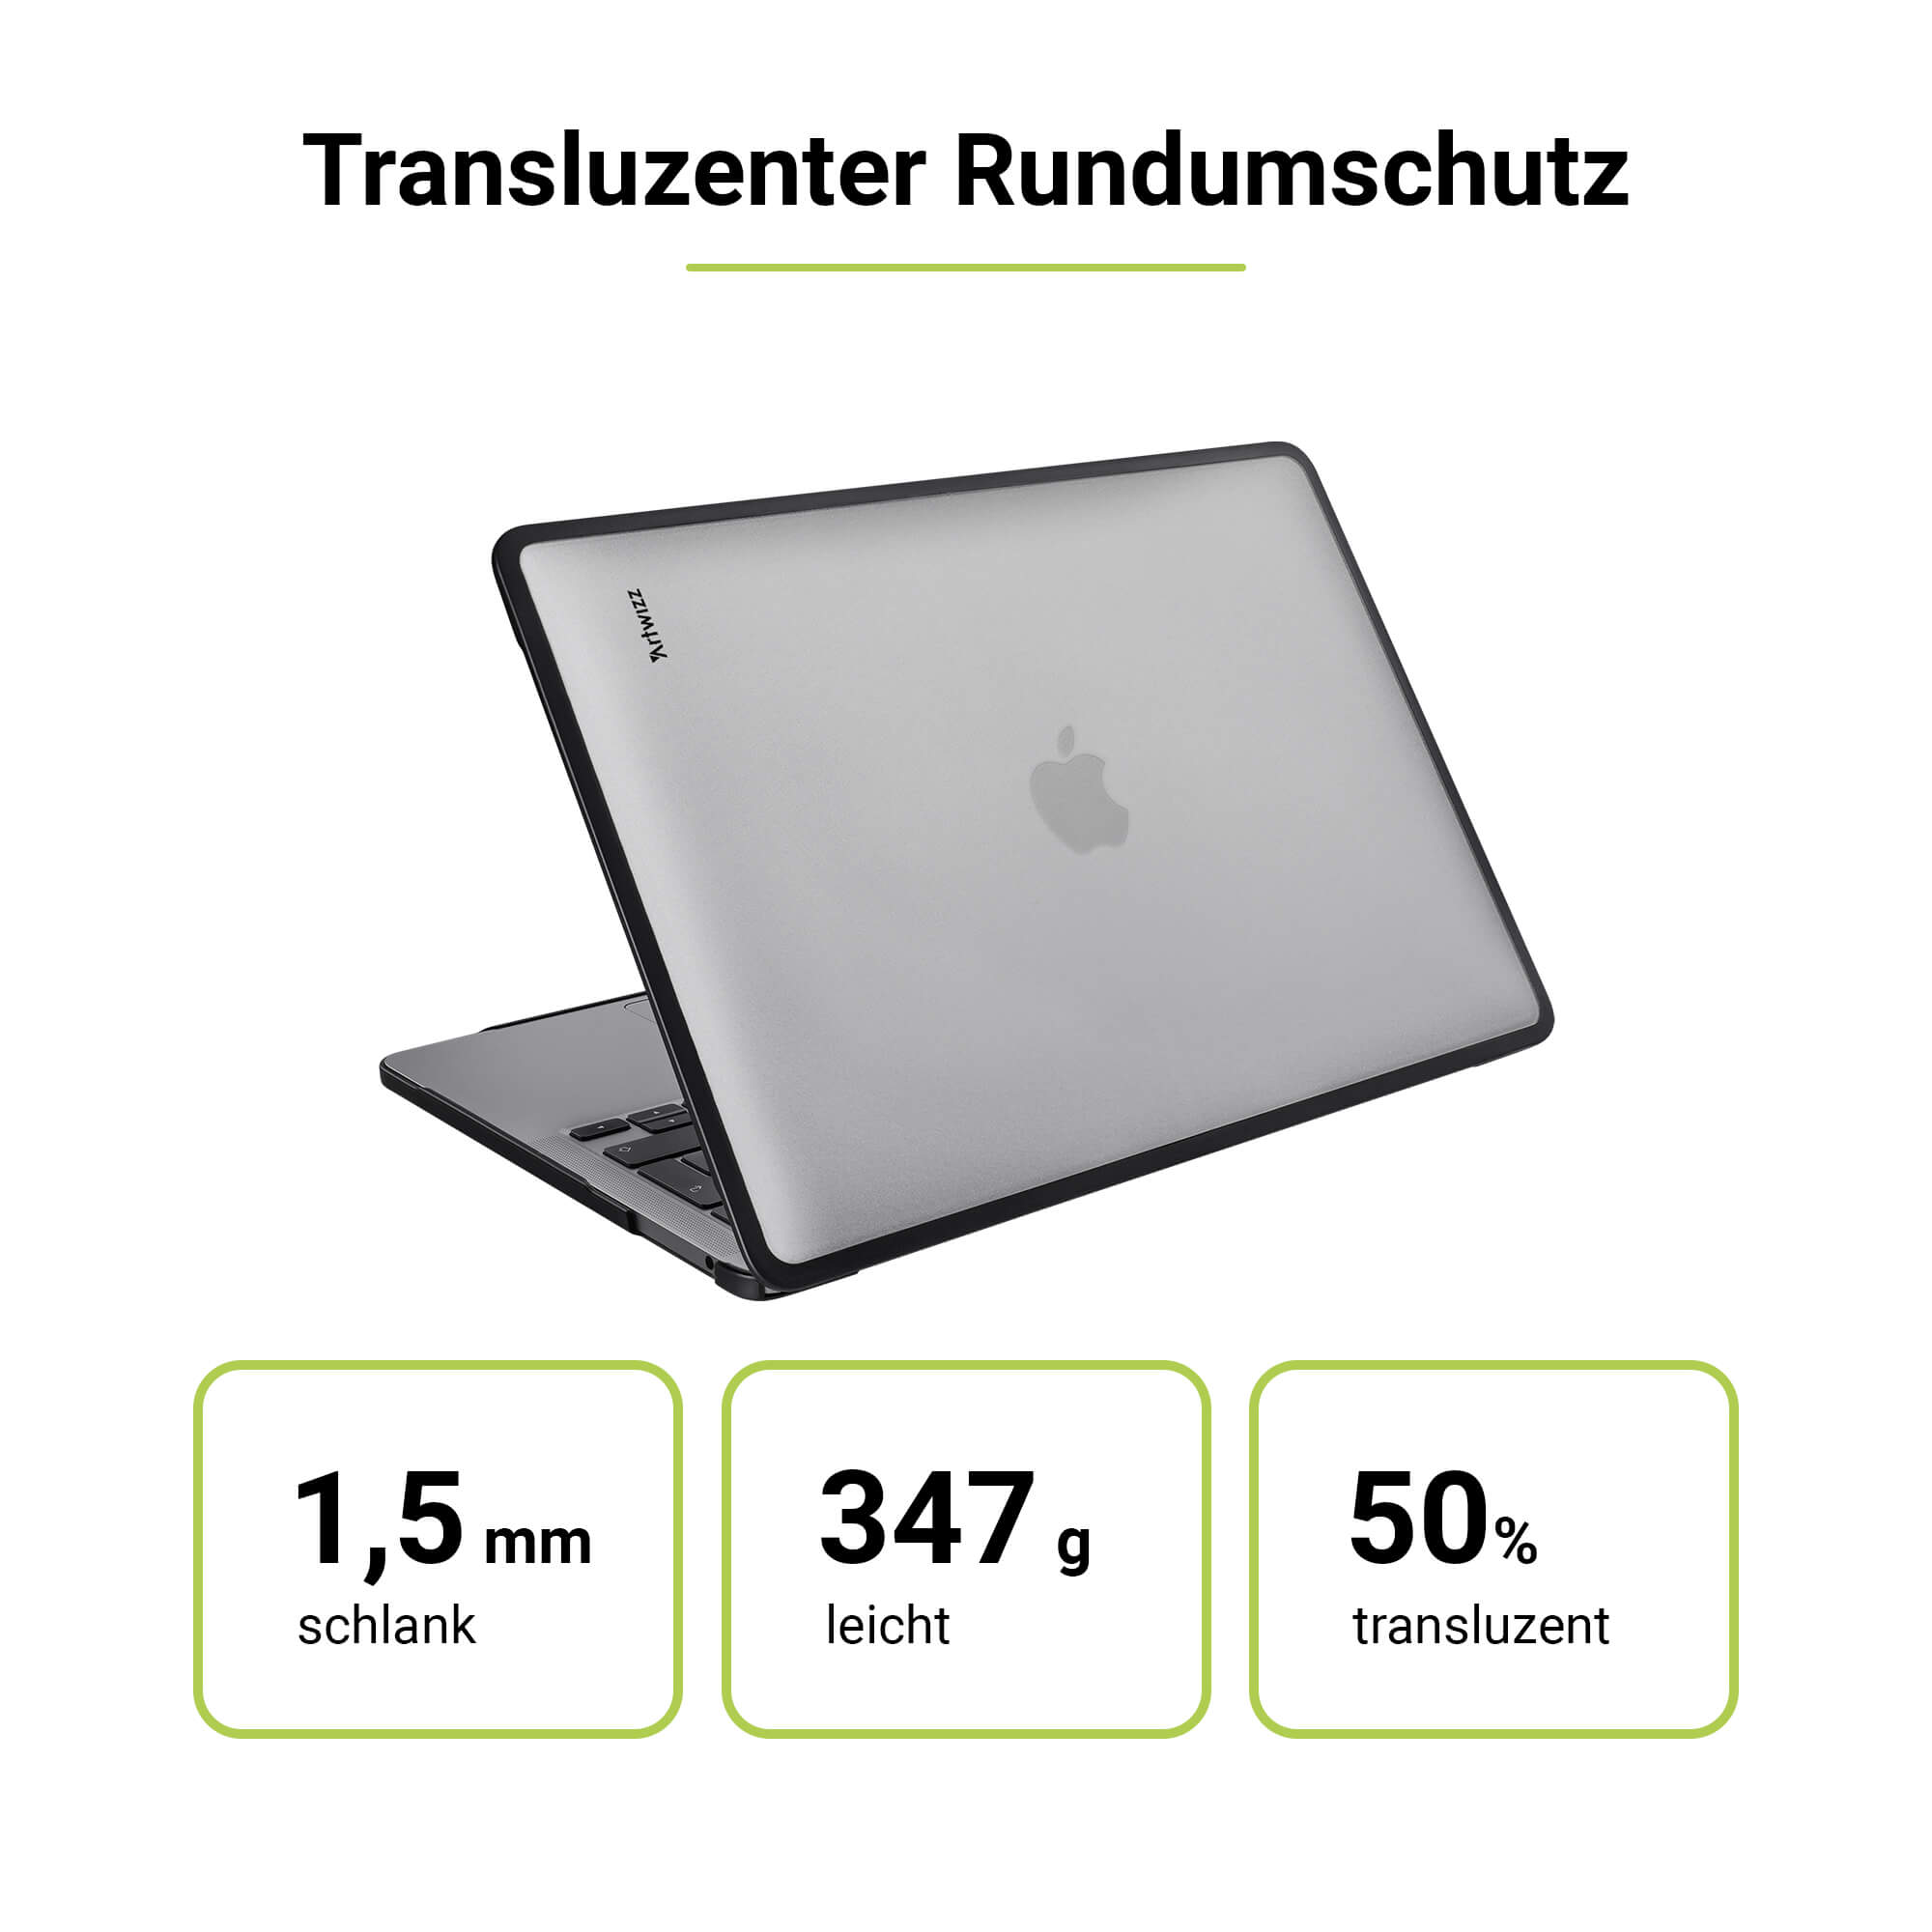 ARTWIZZ IcedClip MacBook Pro Apple Schwarz Notebook Kunststoff, Zoll Transluzent Hülle (M1/M2/M3) für 16 / Bumper